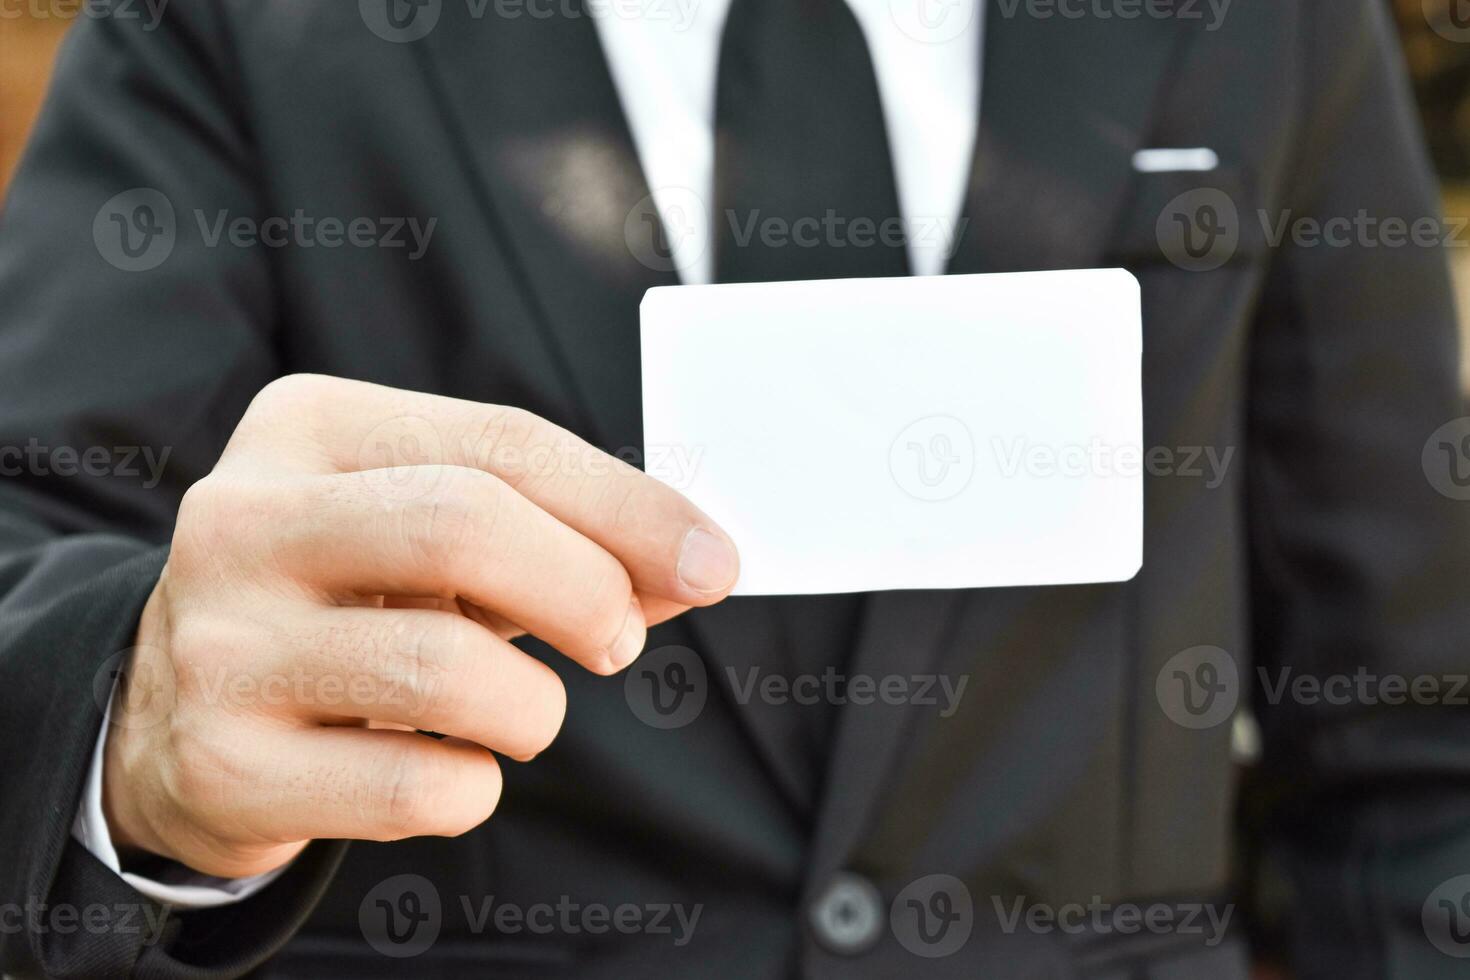 primer plano de un hombre de negocios que muestra un trozo de papel blanco con traje negro. idea para tarjeta de crédito comercial o tarjeta de visita. foto